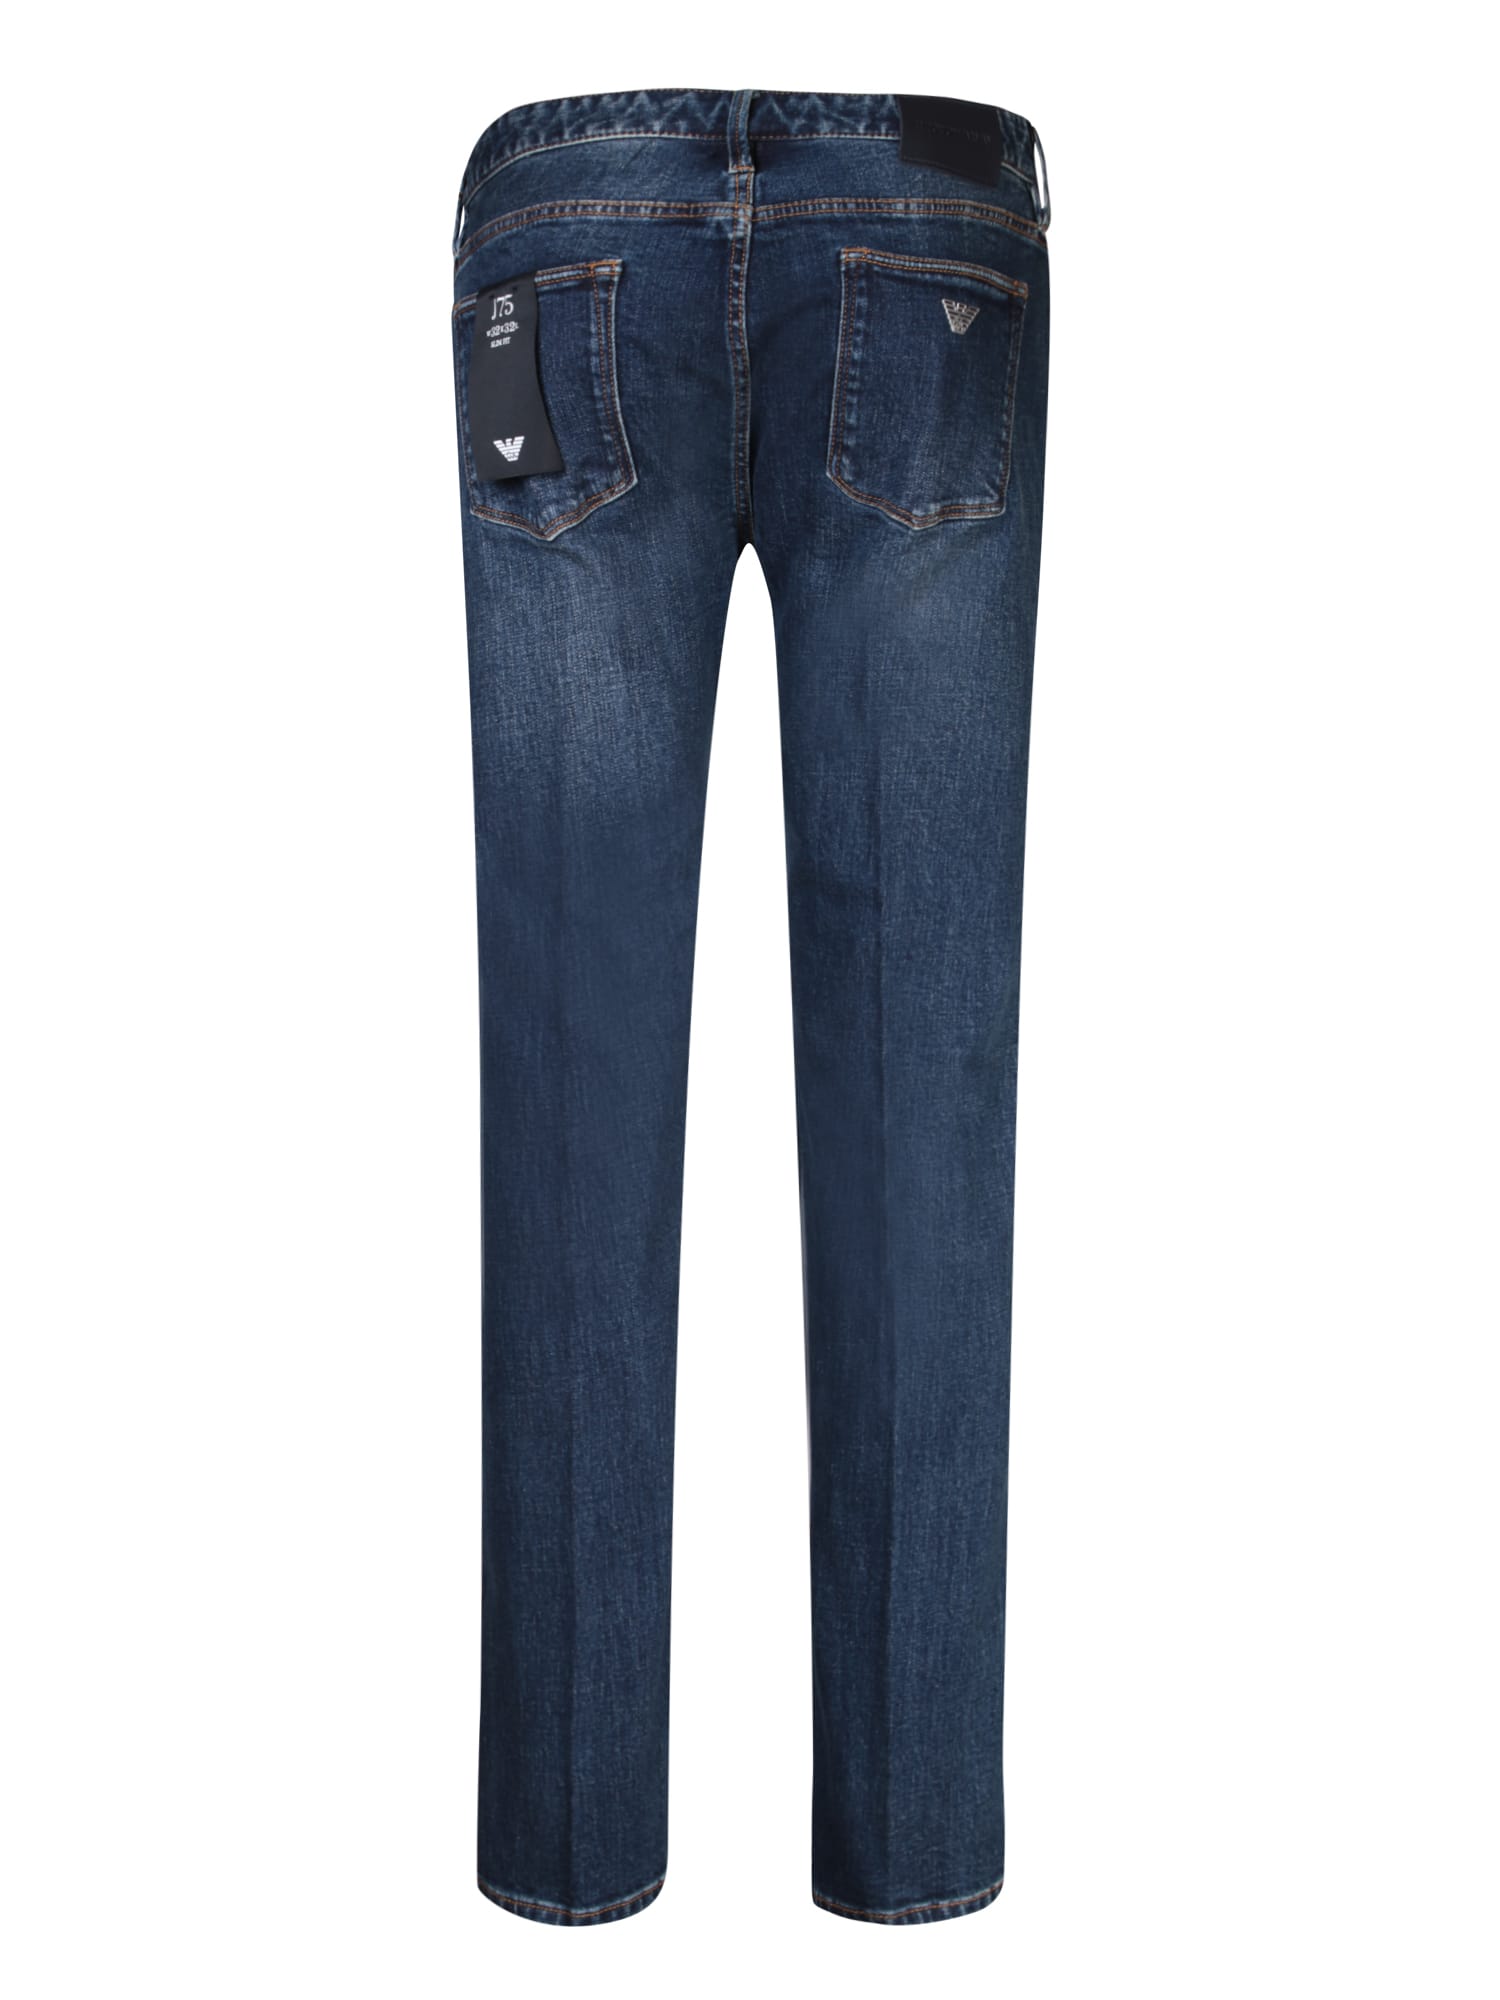 Shop Emporio Armani Slim Fit Blue Jeans